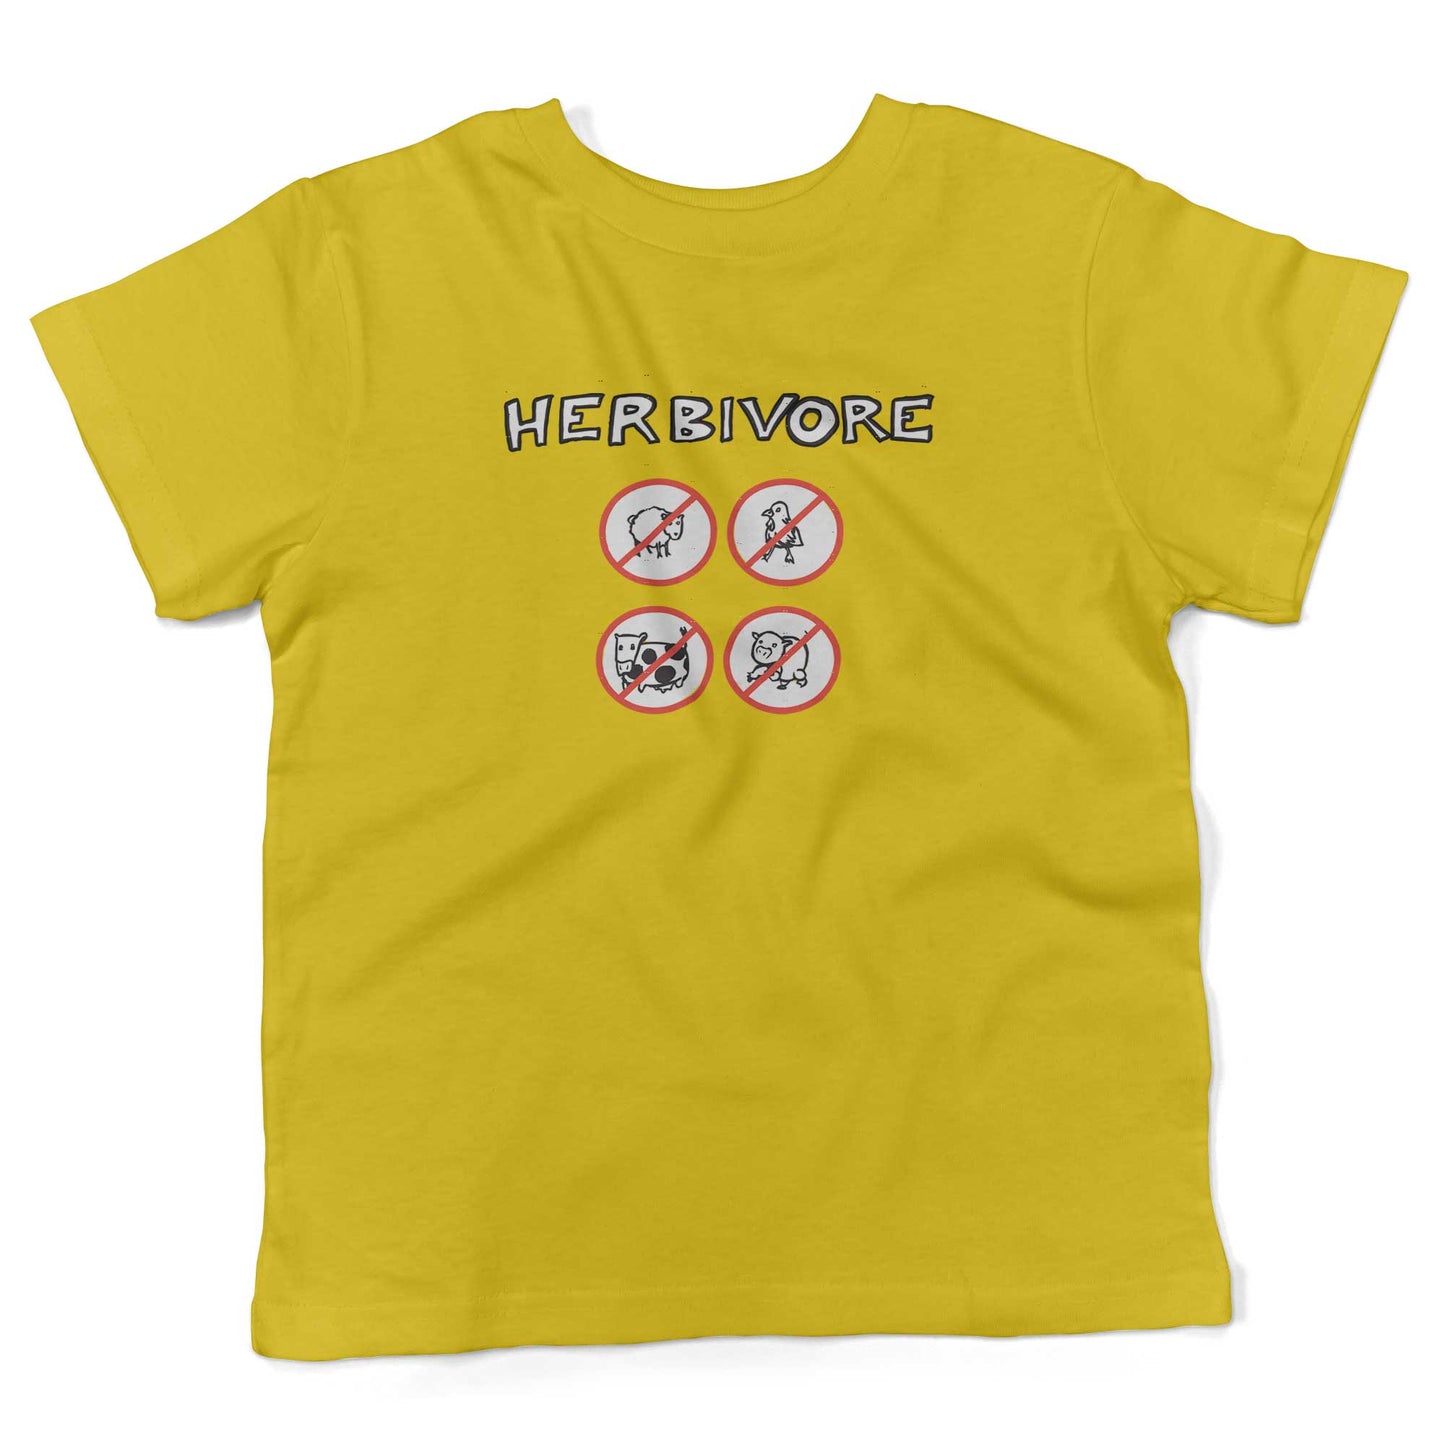 Herbivore Toddler Shirt-Sunshine Yellow-2T